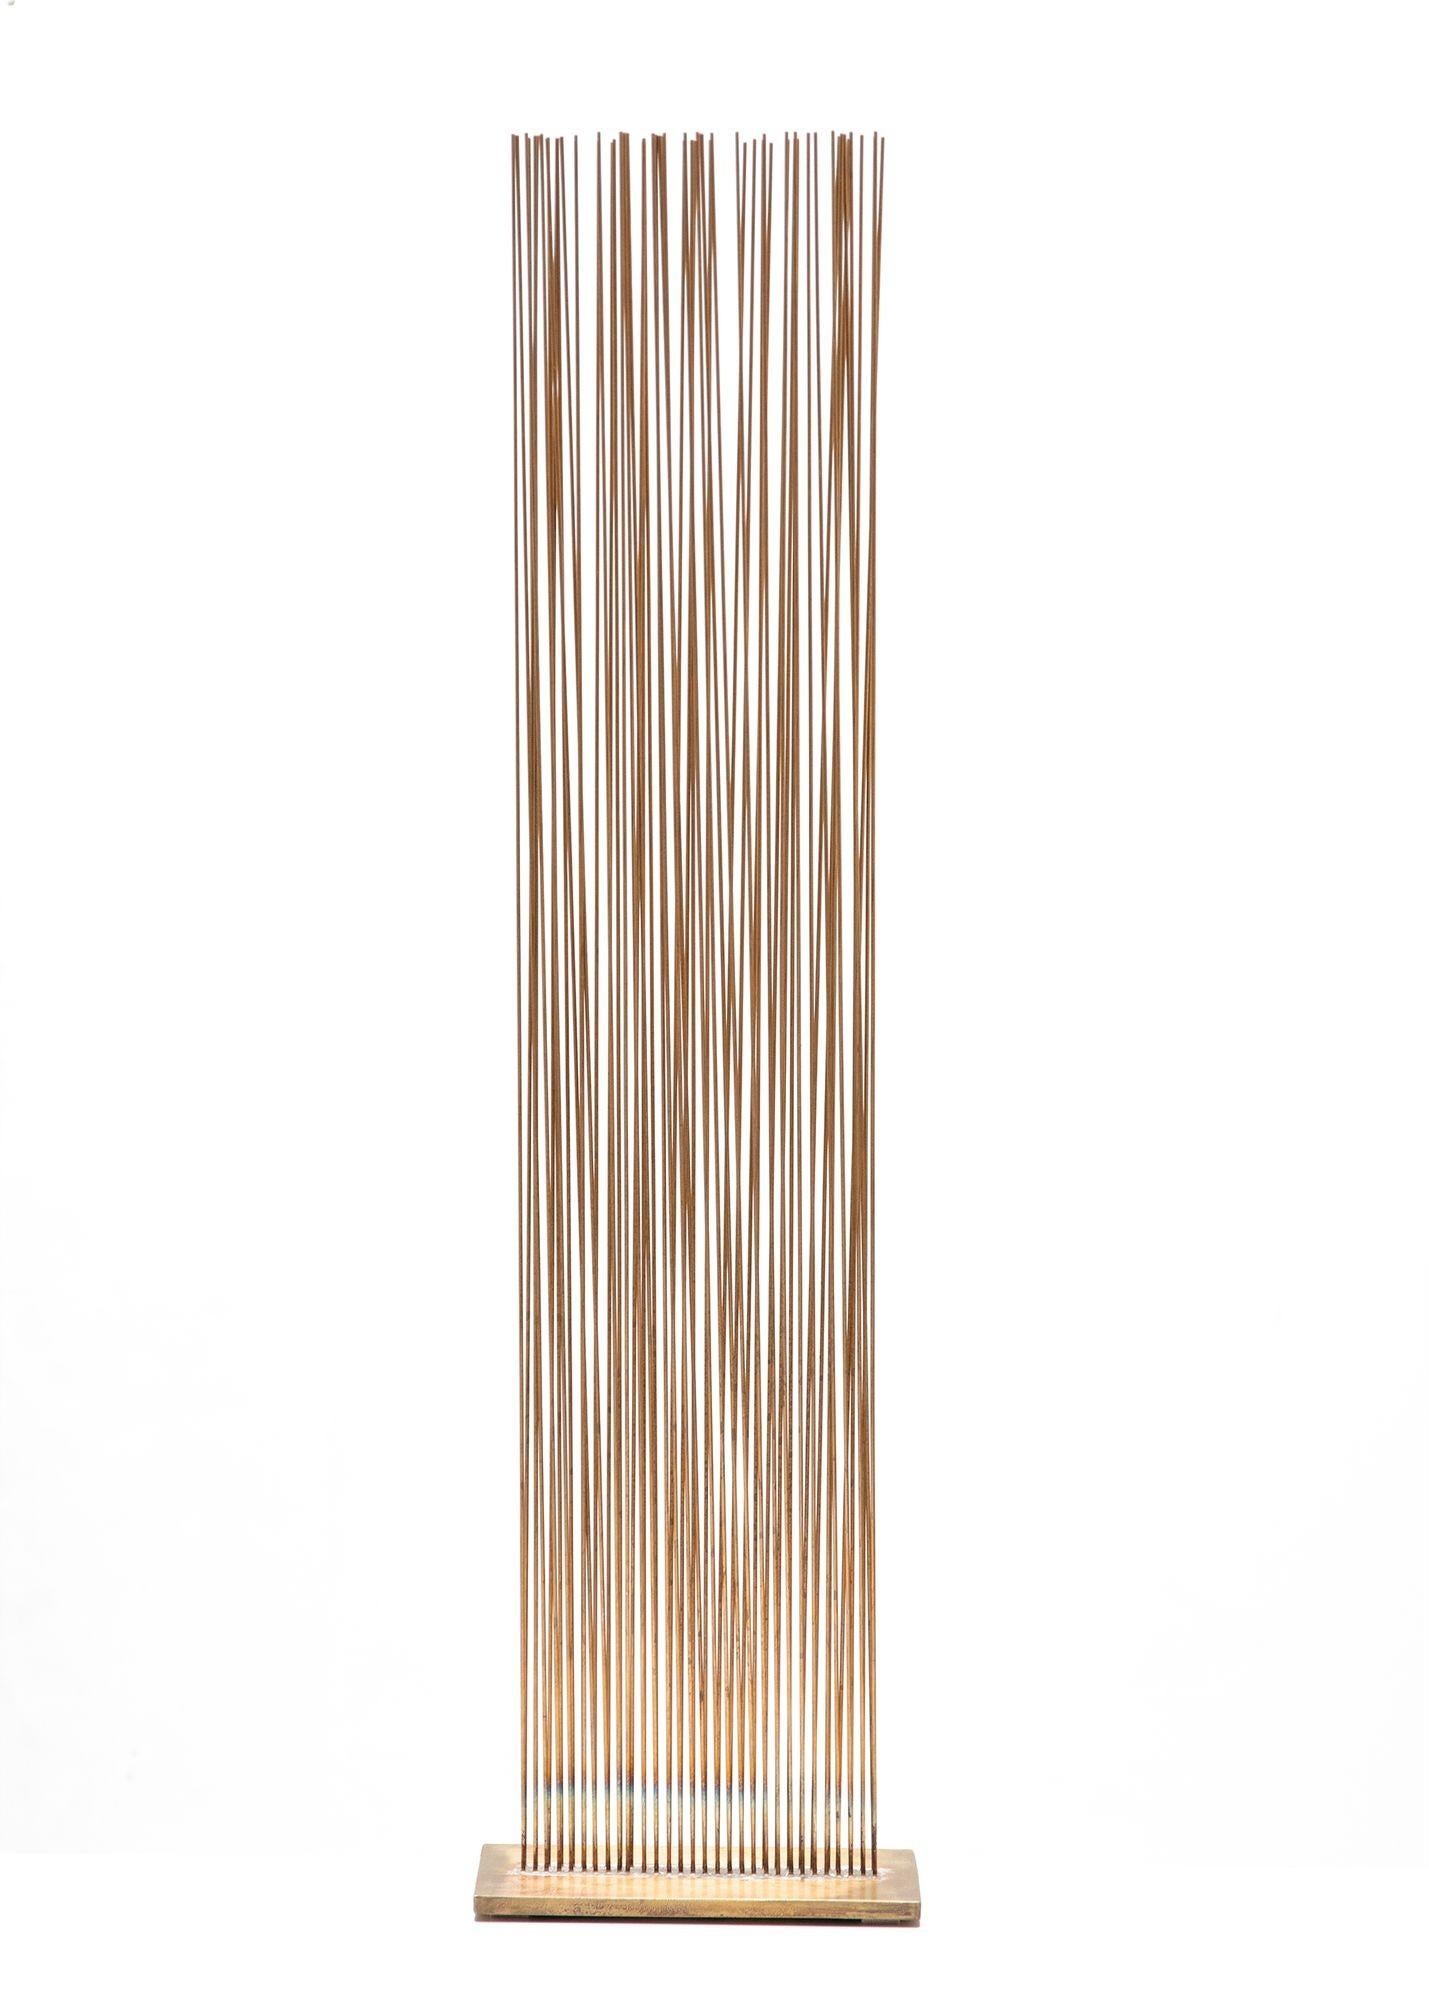 Sculpture Sonambient de Val Bertoia
3' de hauteur
Produit un beau son de résonance lorsque les tiges sont mélangées
 
60 tiges de bronze au silicium avec de l'argent en rangées en forme de V, fixées à une base en laiton
Estampillé du numéro de